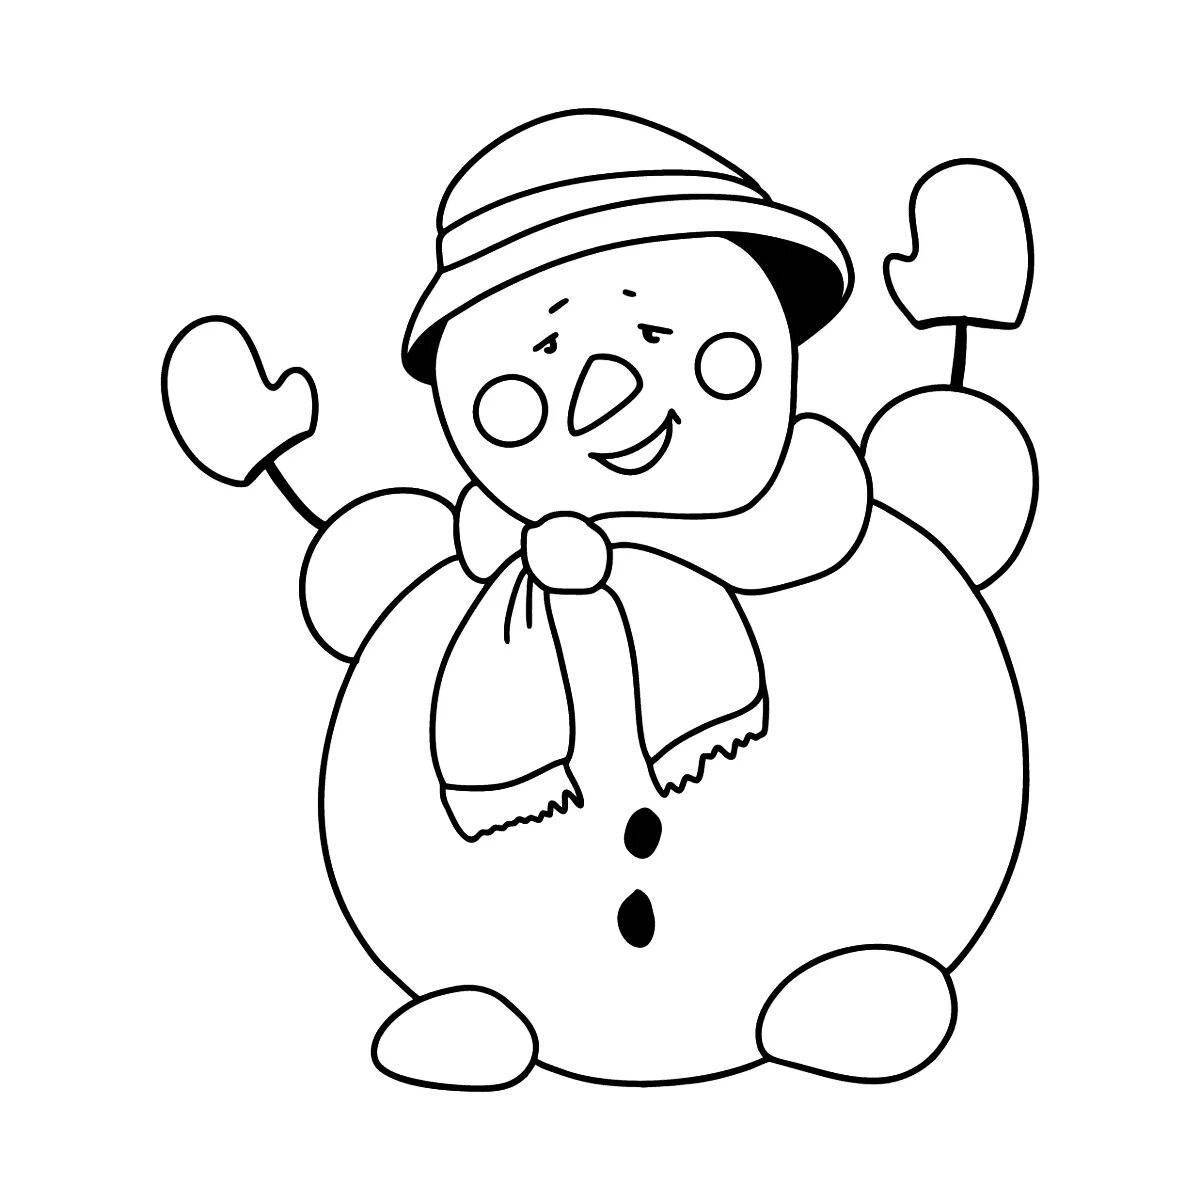 Magic coloring snowman